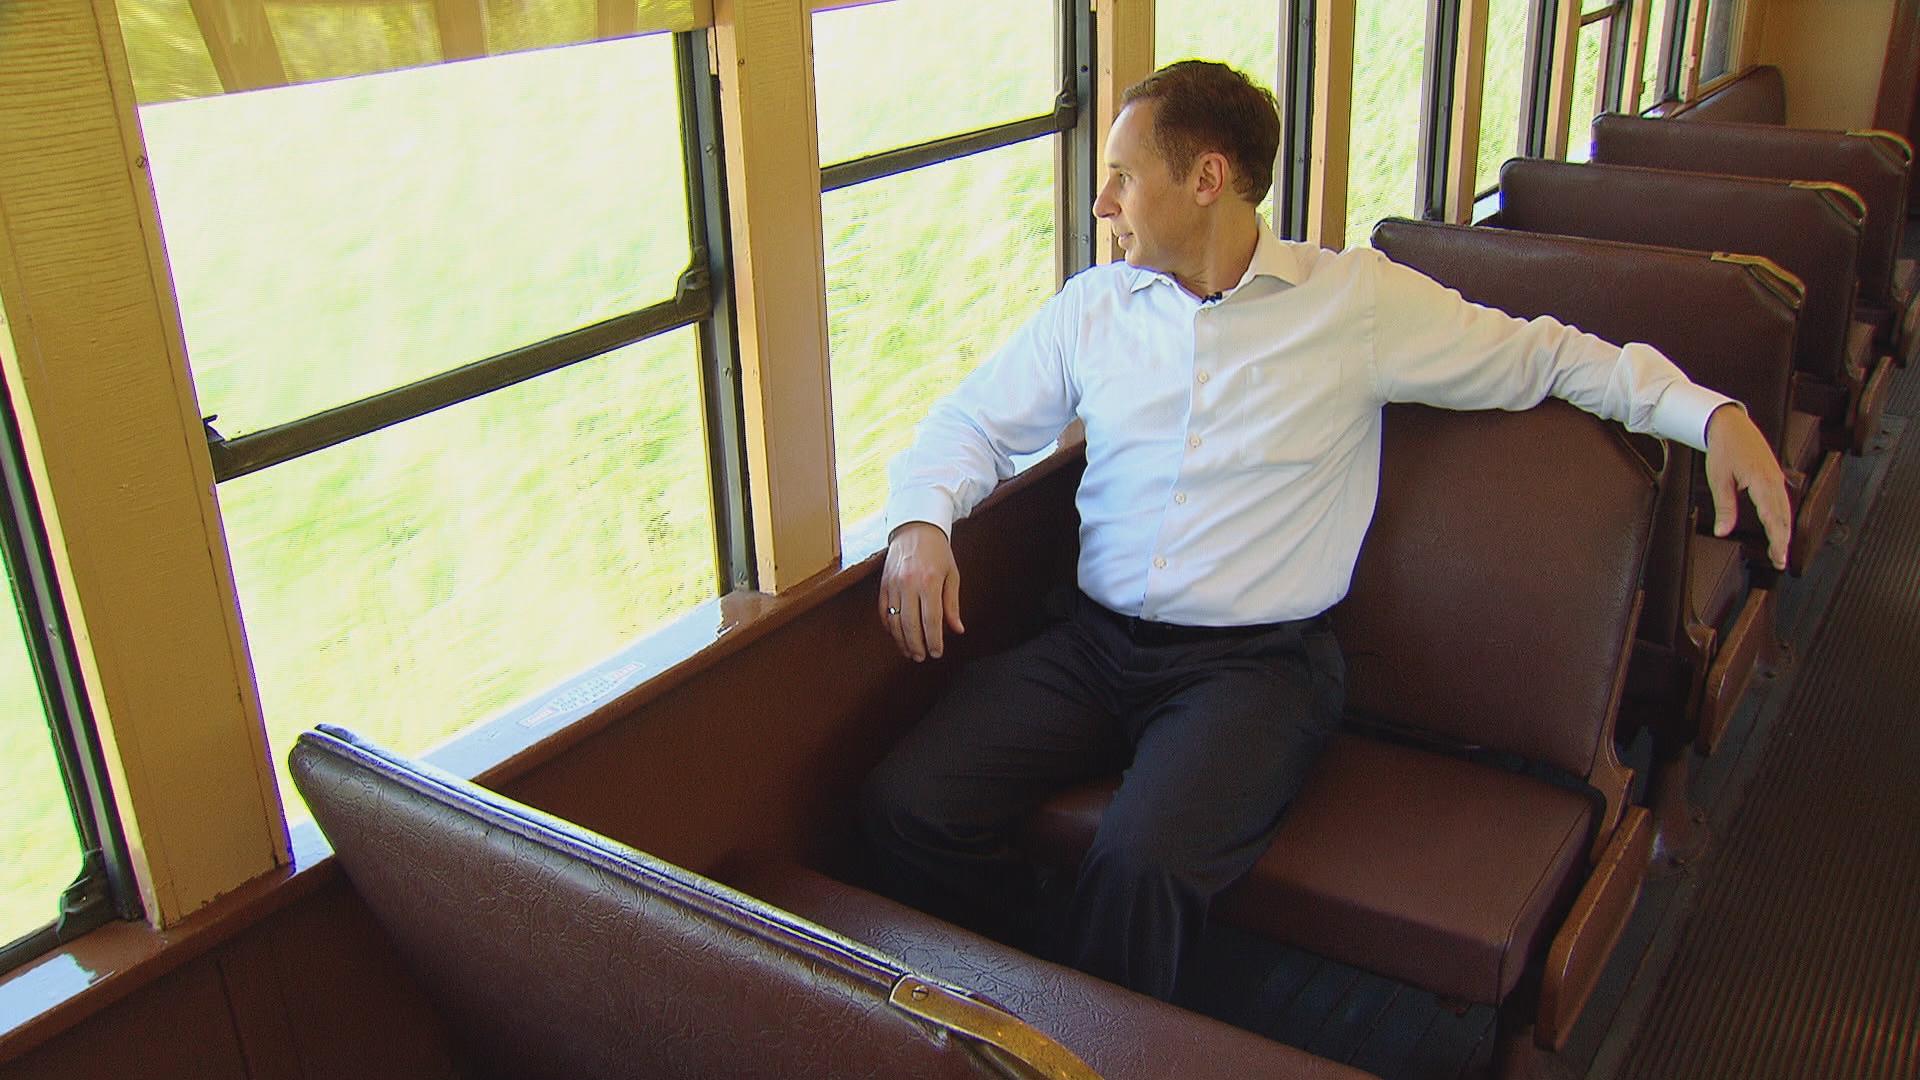 Eddie Arruza enjoys “dynamic air conditioning” on a vintage railcar.